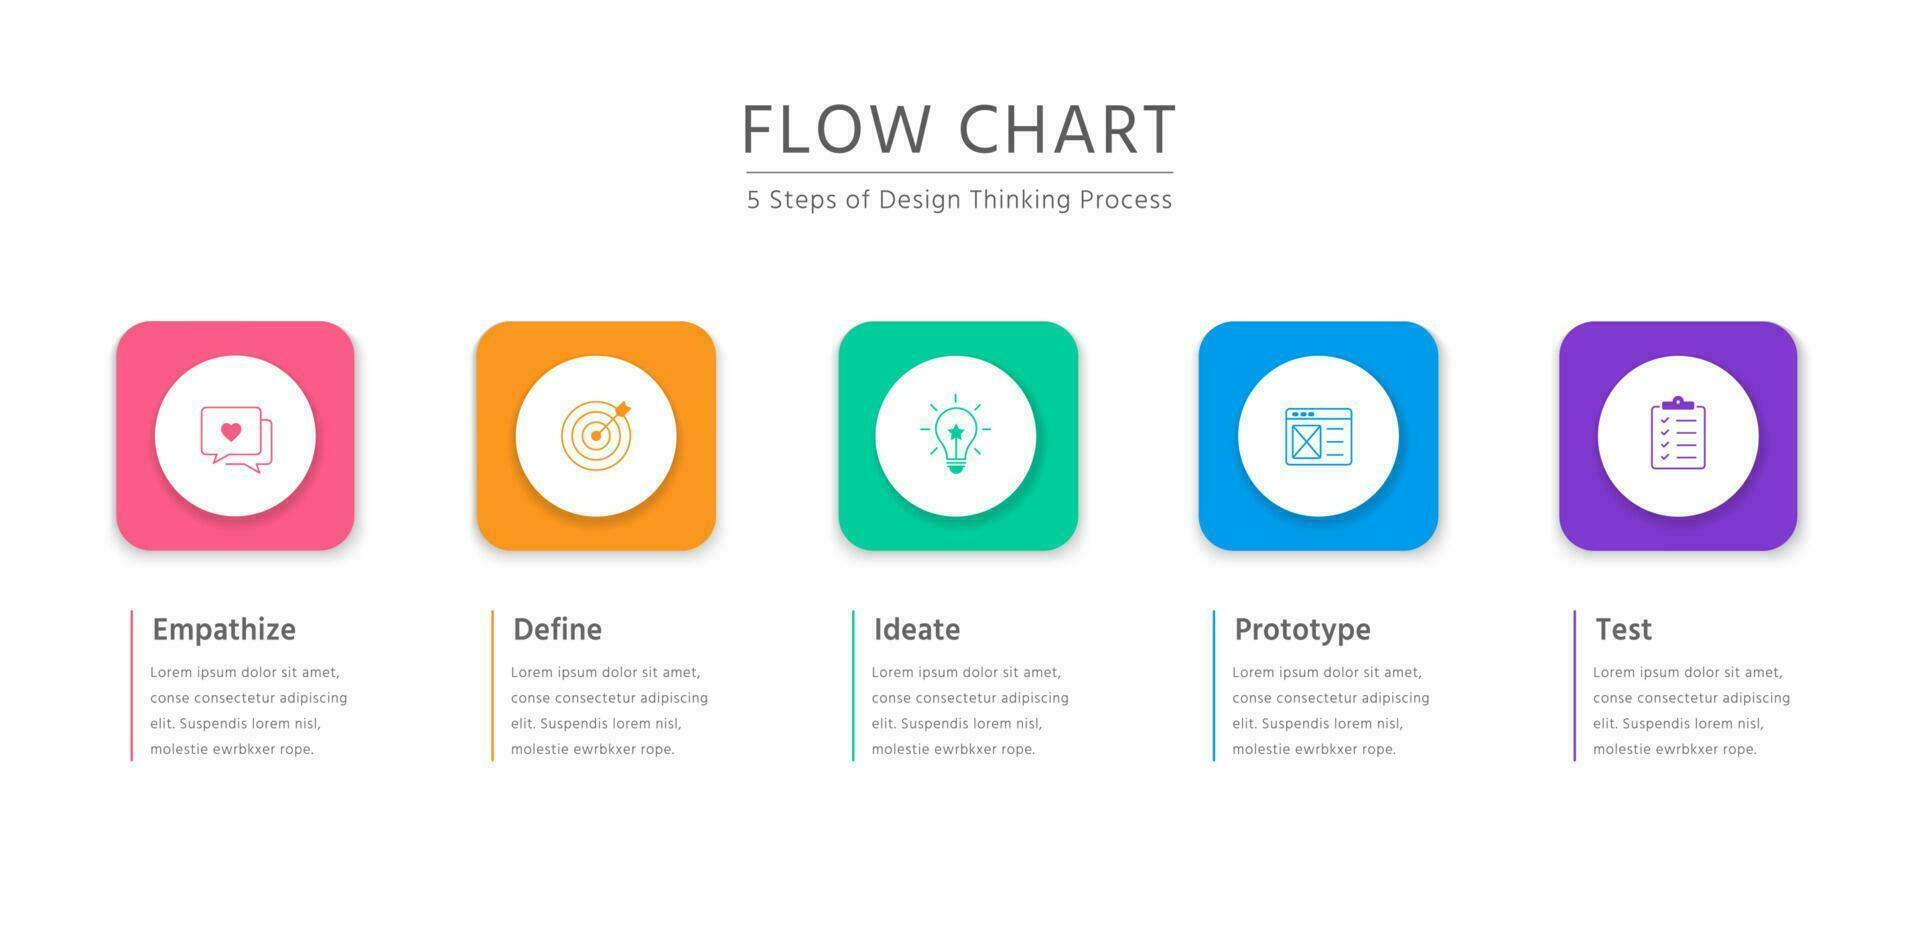 5 5 pasos de diseño pensando proceso en horizontal vistoso fluir gráfico con enfatizar, definir, idear, prototipo, y prueba vector